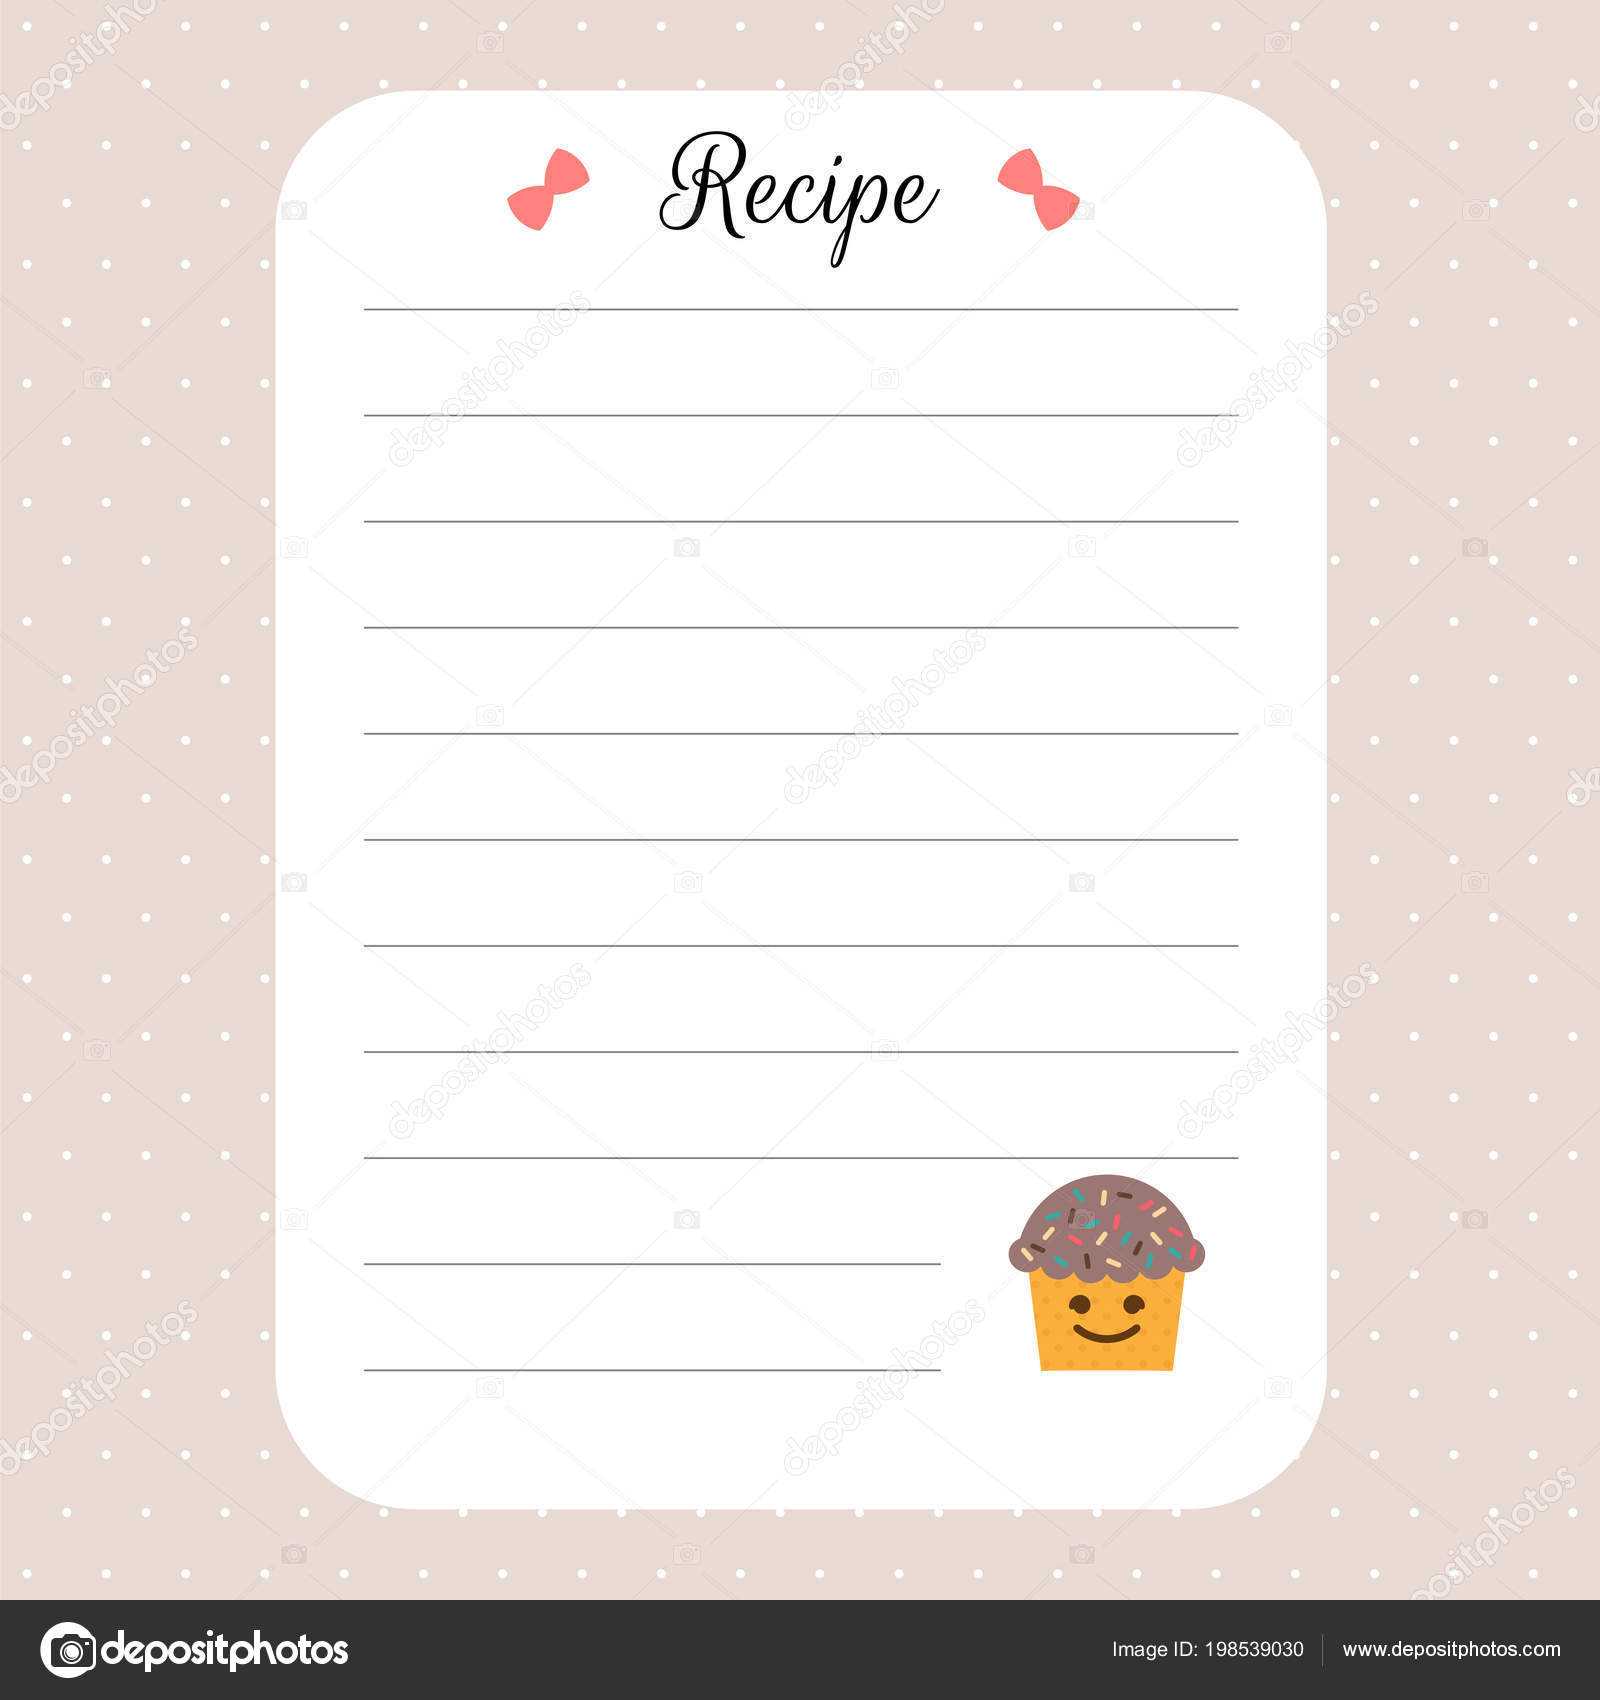 Restaurant Recipe Book Template | Recipe Card Template Intended For Restaurant Recipe Card Template